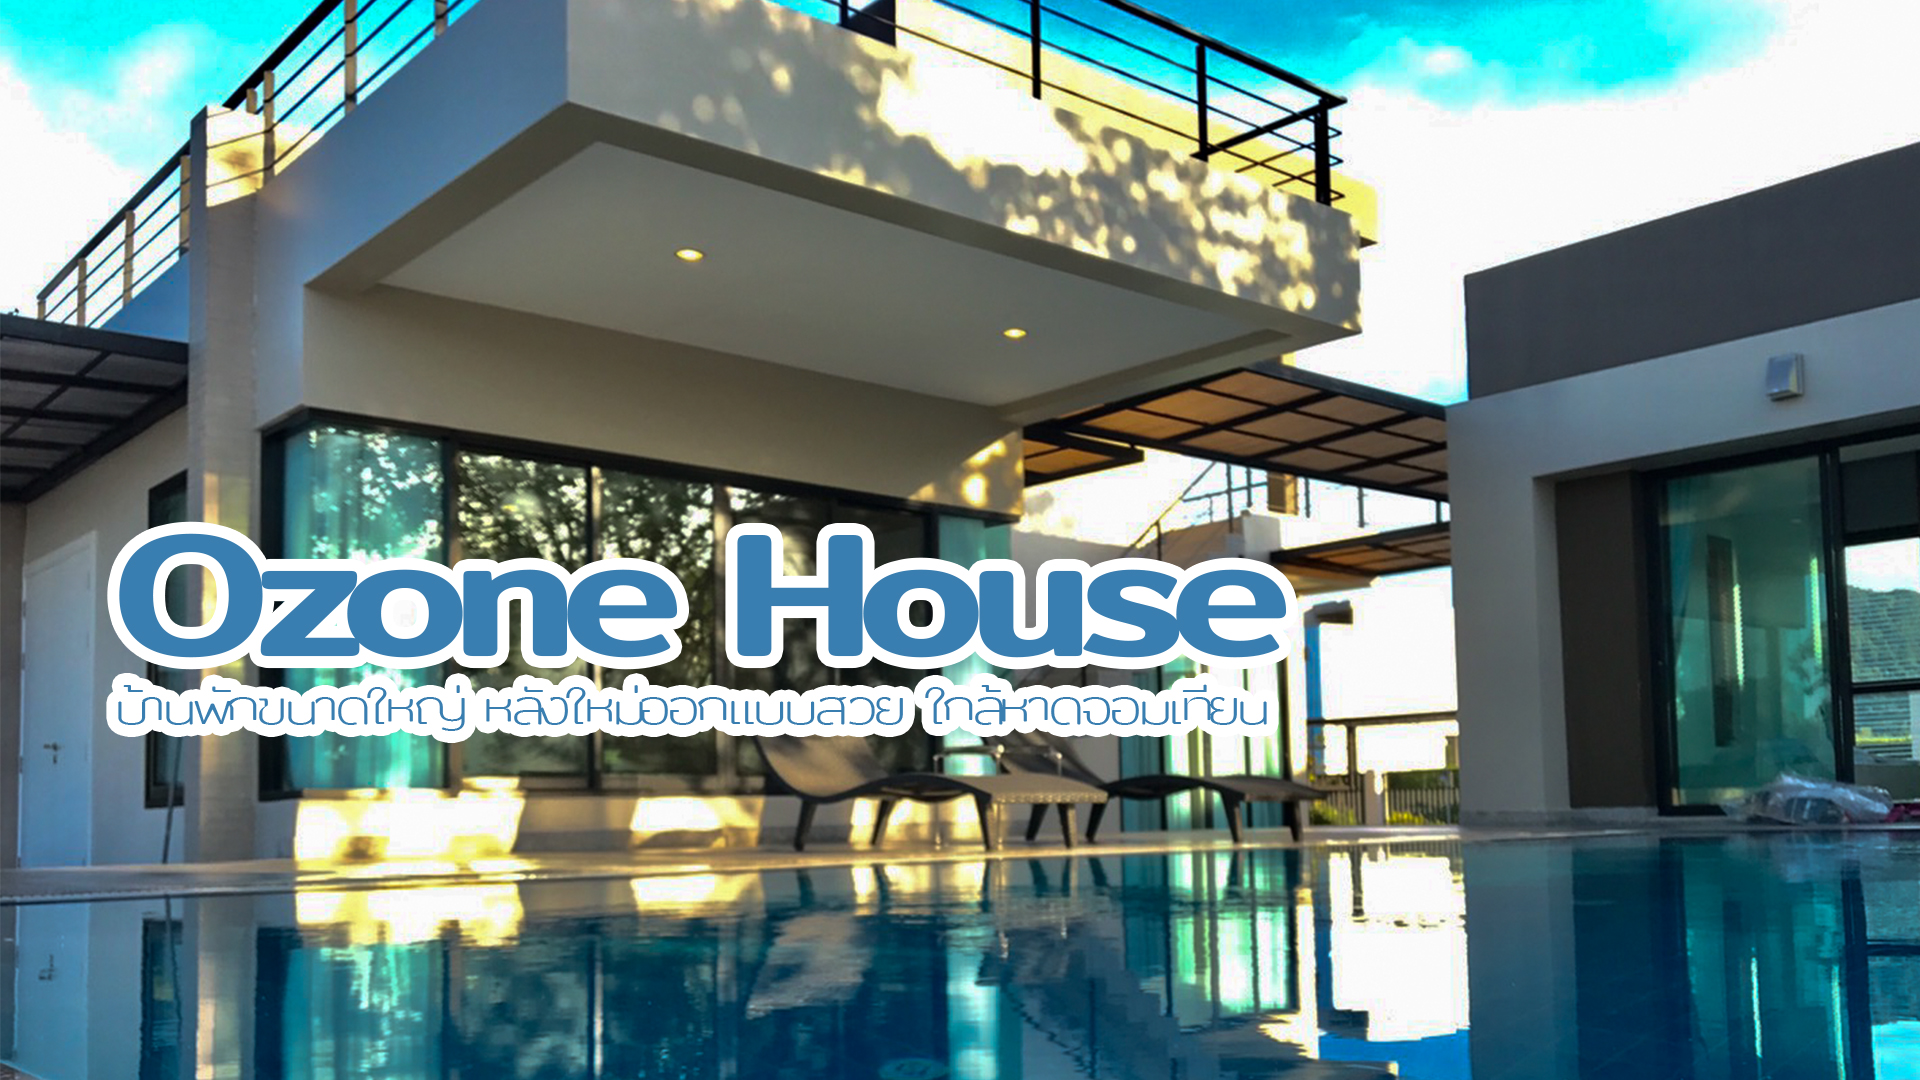 Ozone House บ้านพักขนาดใหญ่ หลังใหม่ออกแบบสวย ใกล้หาดจอมเทียน